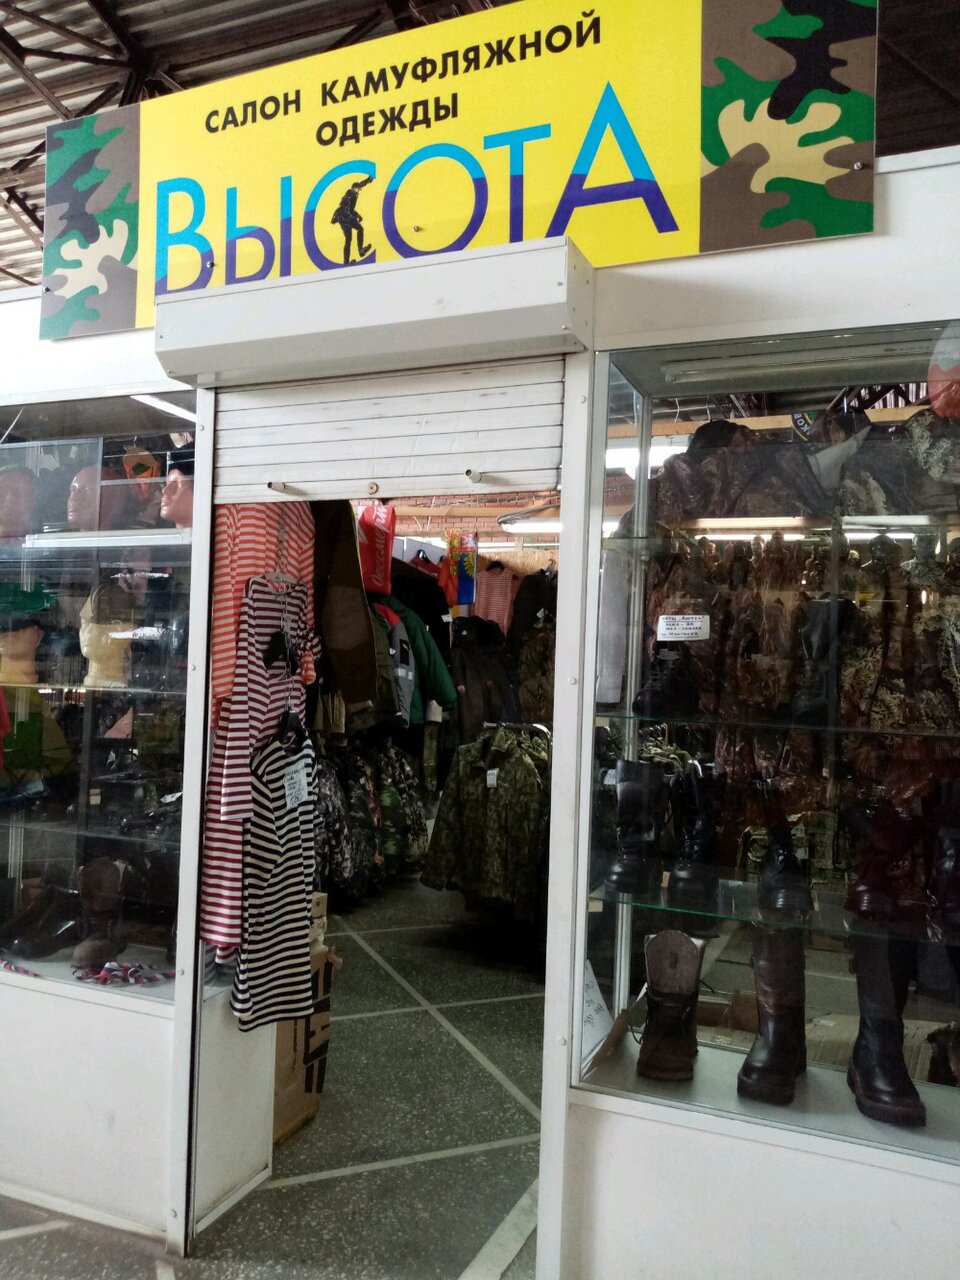 Салон камуфляжной одежды "Высота" на Хитром рынке в Омске